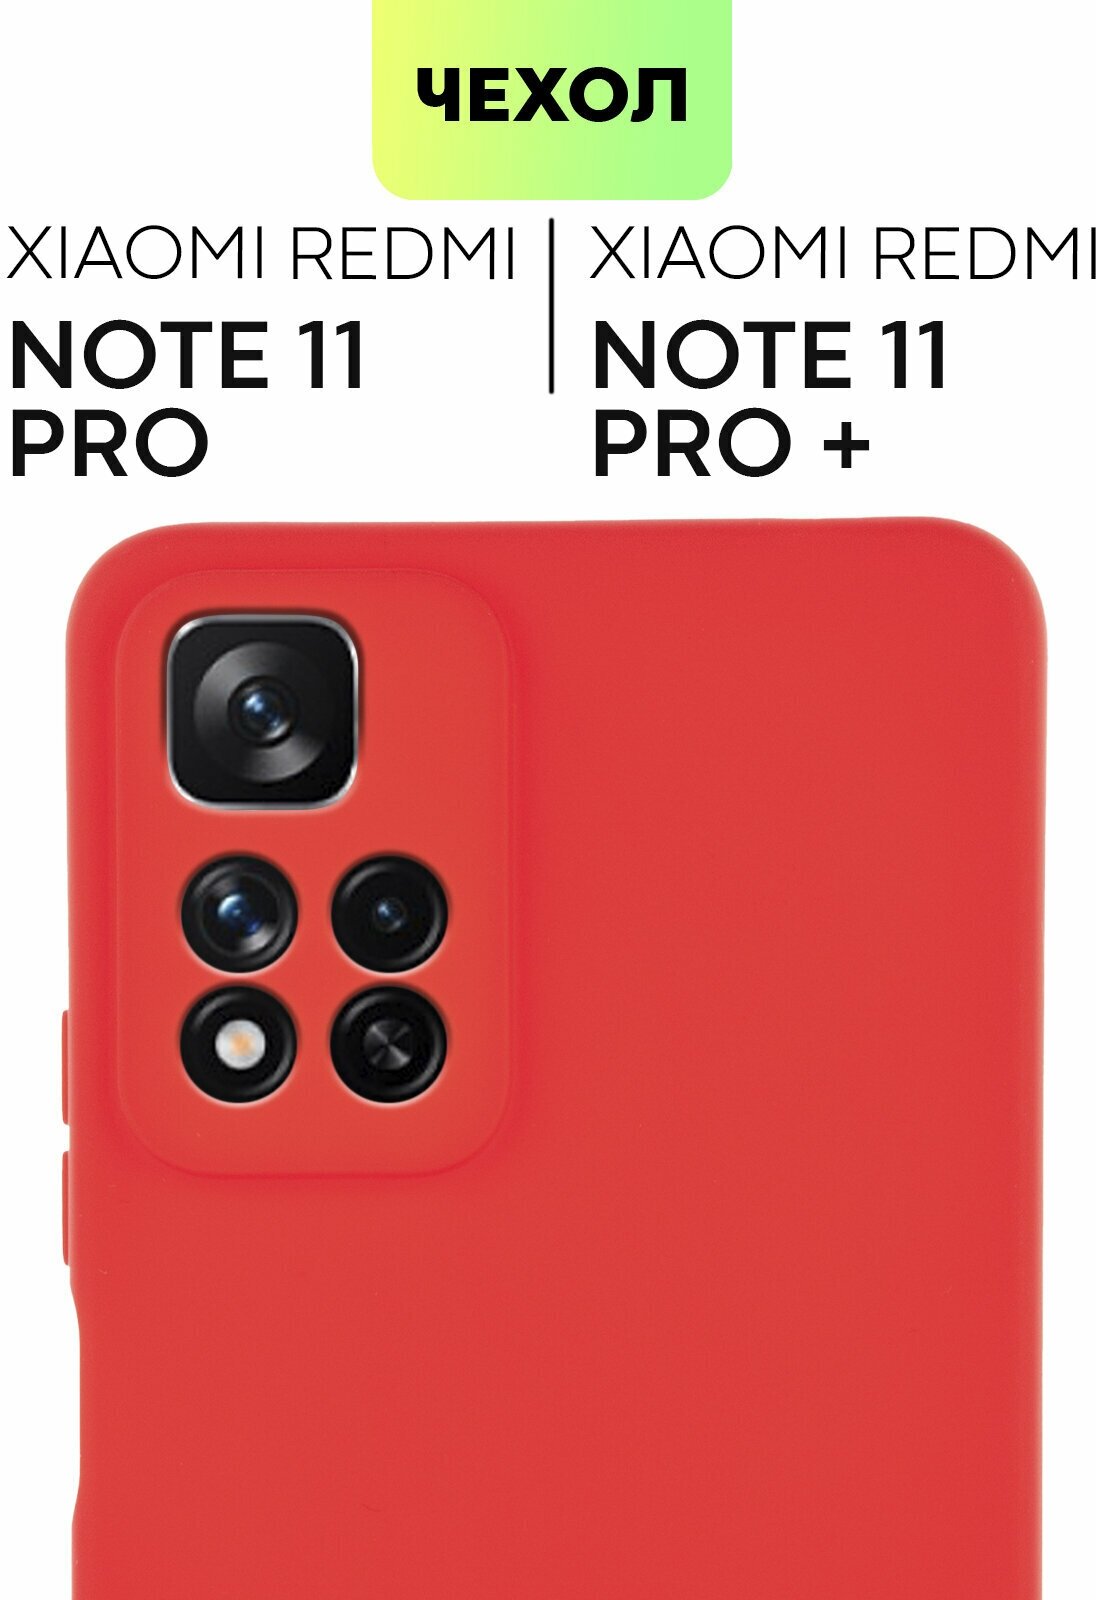 Чехол для Xiaomi Redmi Note 11 Pro 5G, Note Pro+ (Редми Ноут 11 Про, Про+) тонкий, силиконовый чехол, матовое покрытие, защита камер, красный BROSCORP